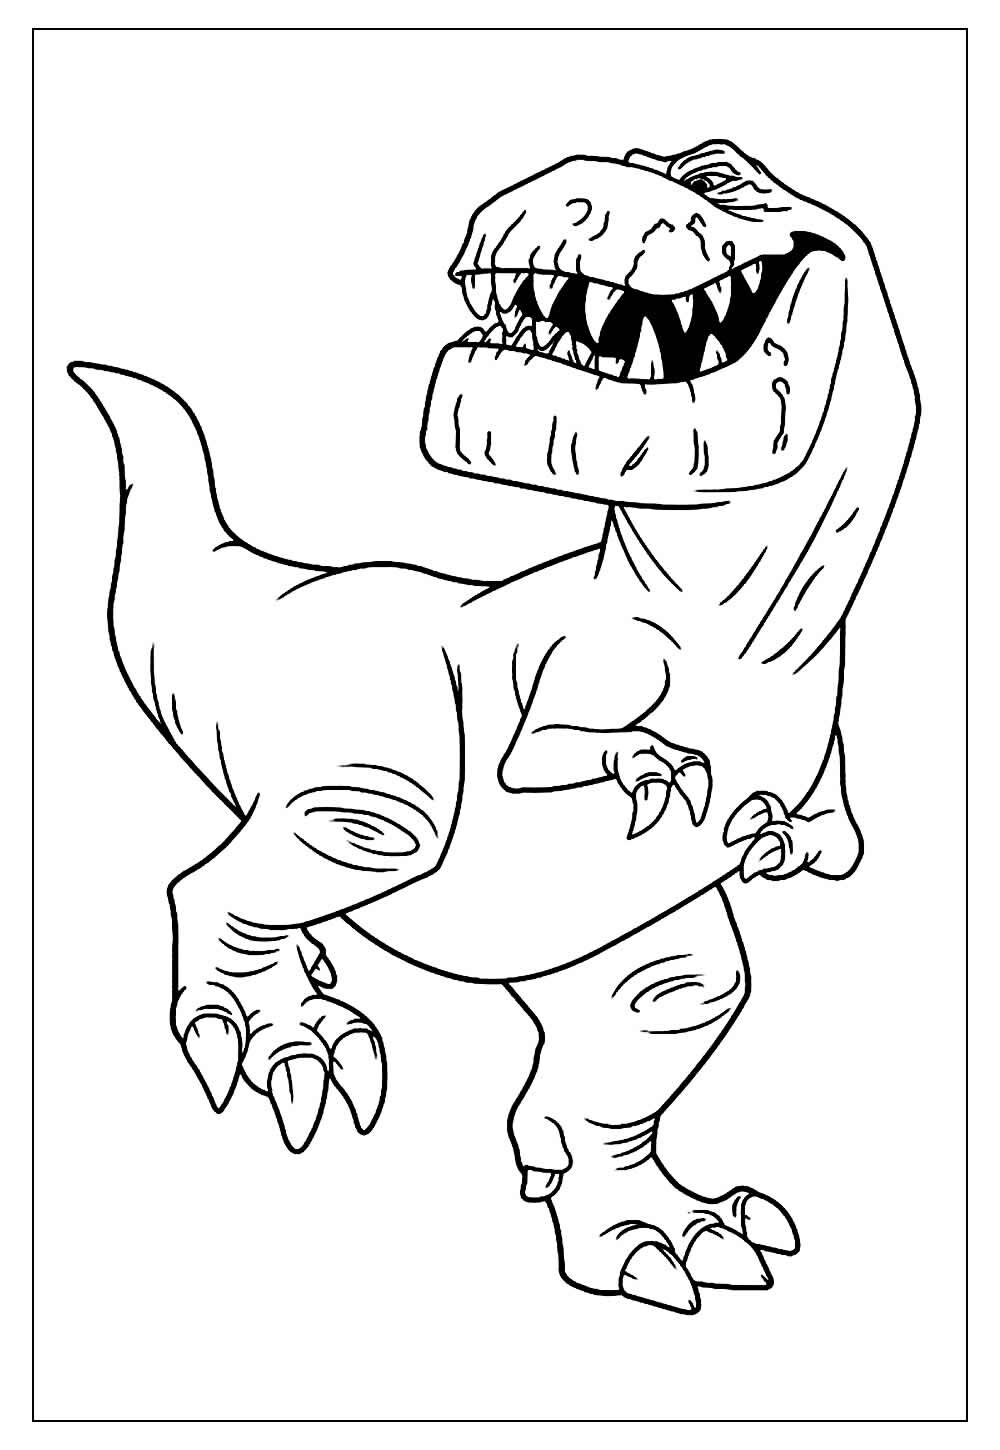 Dinossauro para pintar - Desenho